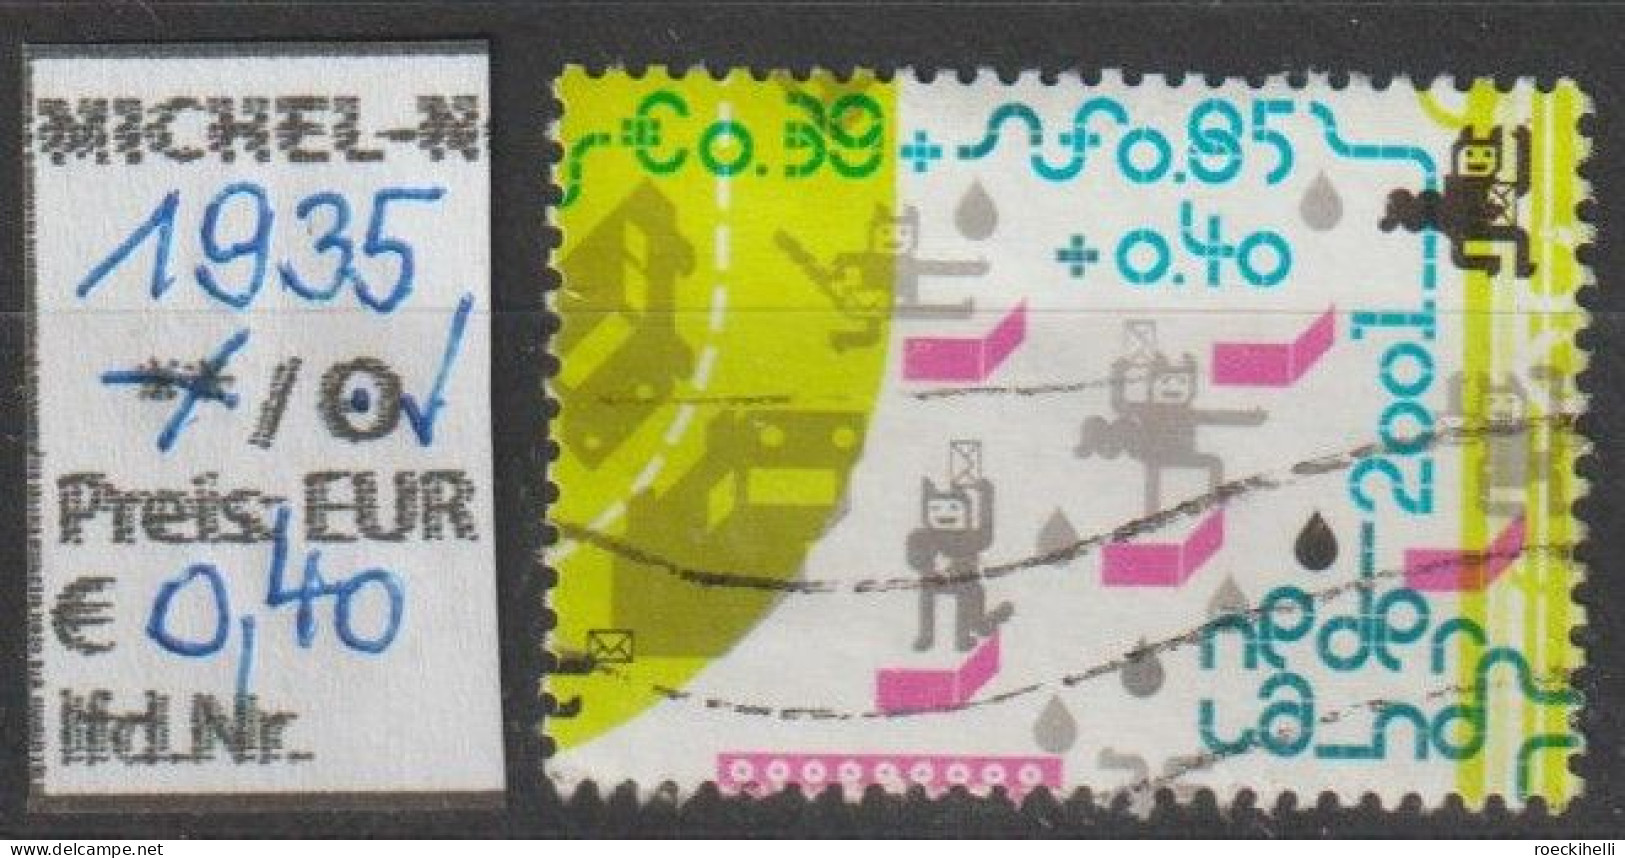 2001 - NIEDERLANDE - FM/DM A. Block "Voor Het Kind" 0,85 G + 0,40 G Mehrf. - S. Scan  (1935o Nl) - Used Stamps